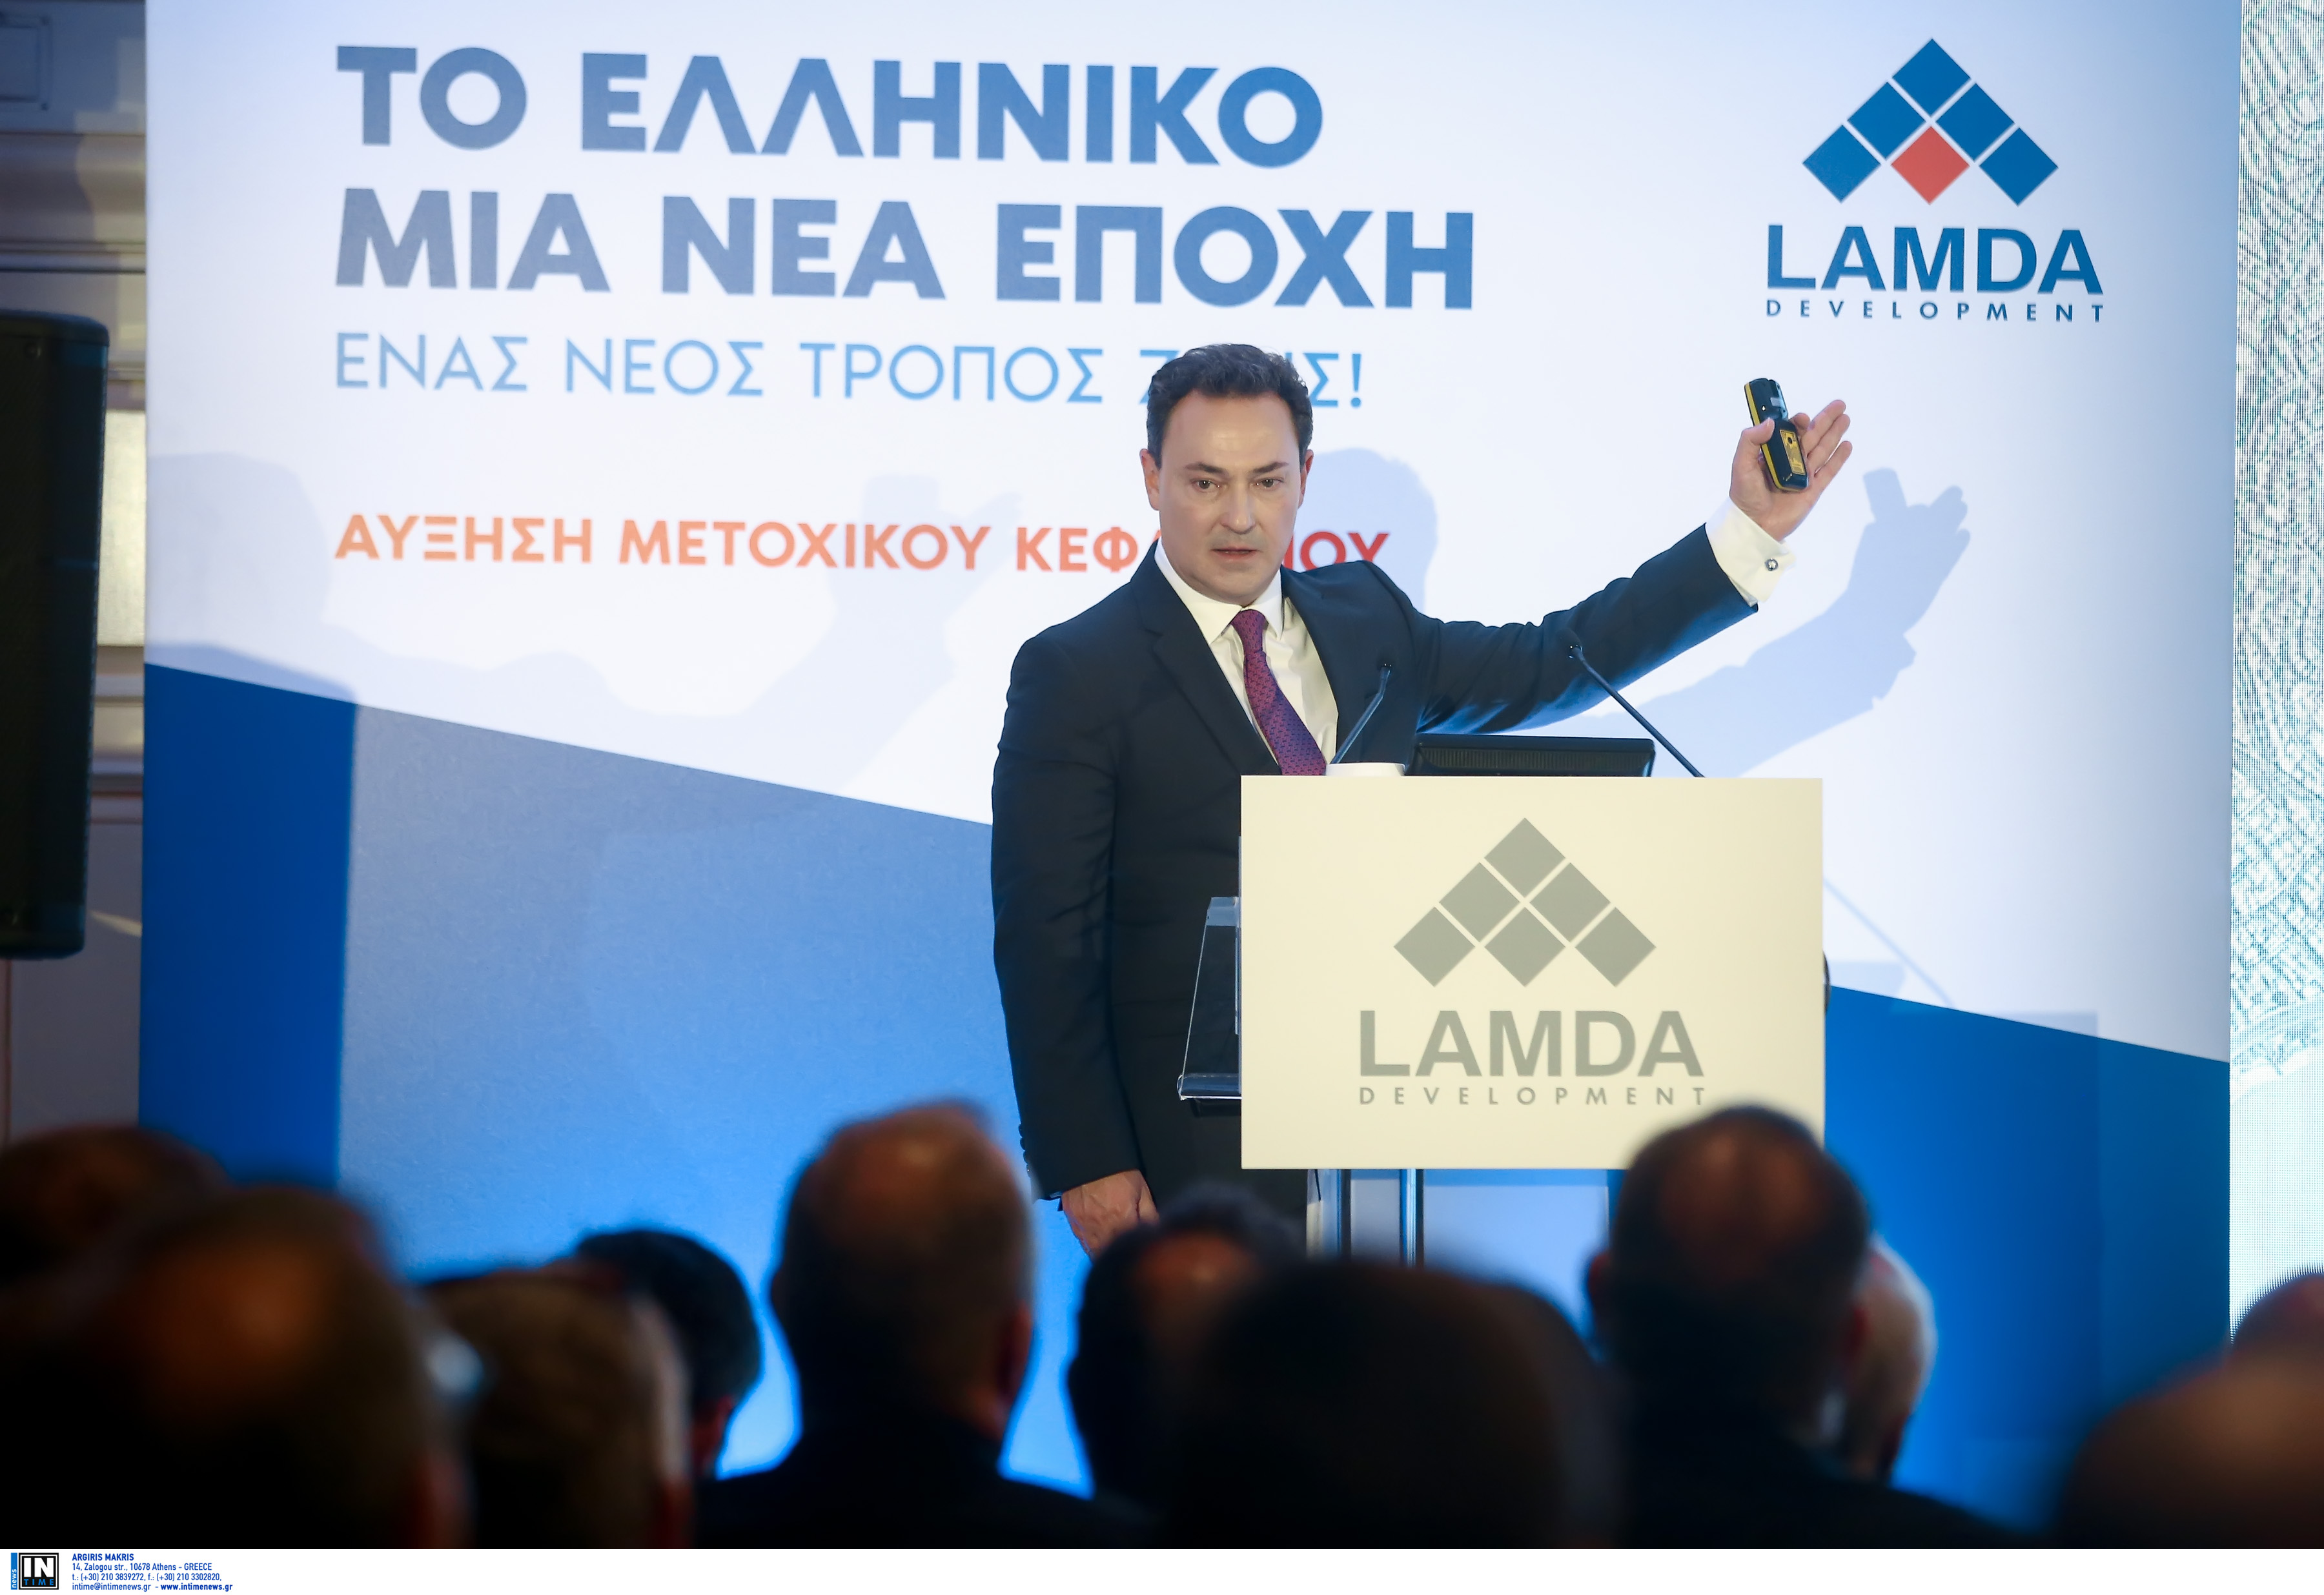 Lamda Development: Η επίσημη ανακοίνωση για την εντυπωσιακή αύξηση μετοχικού κεφαλαίου